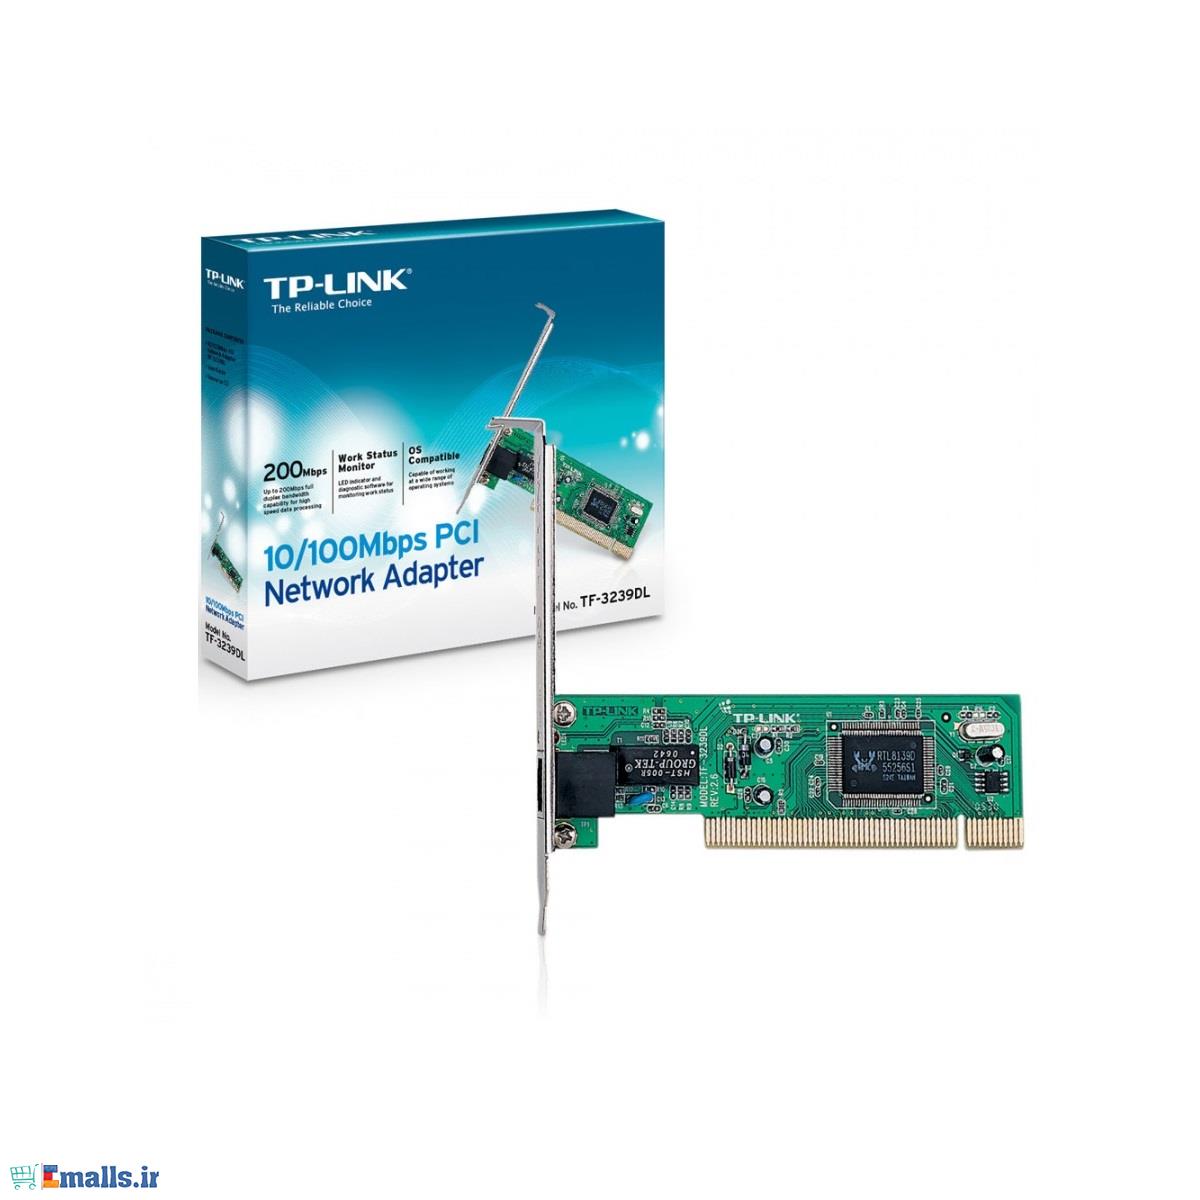 کارت شبکه تی پی لینک TF-3239DL TP-LINK TF-3239DL 10/100Mbps PCI Network Adapter